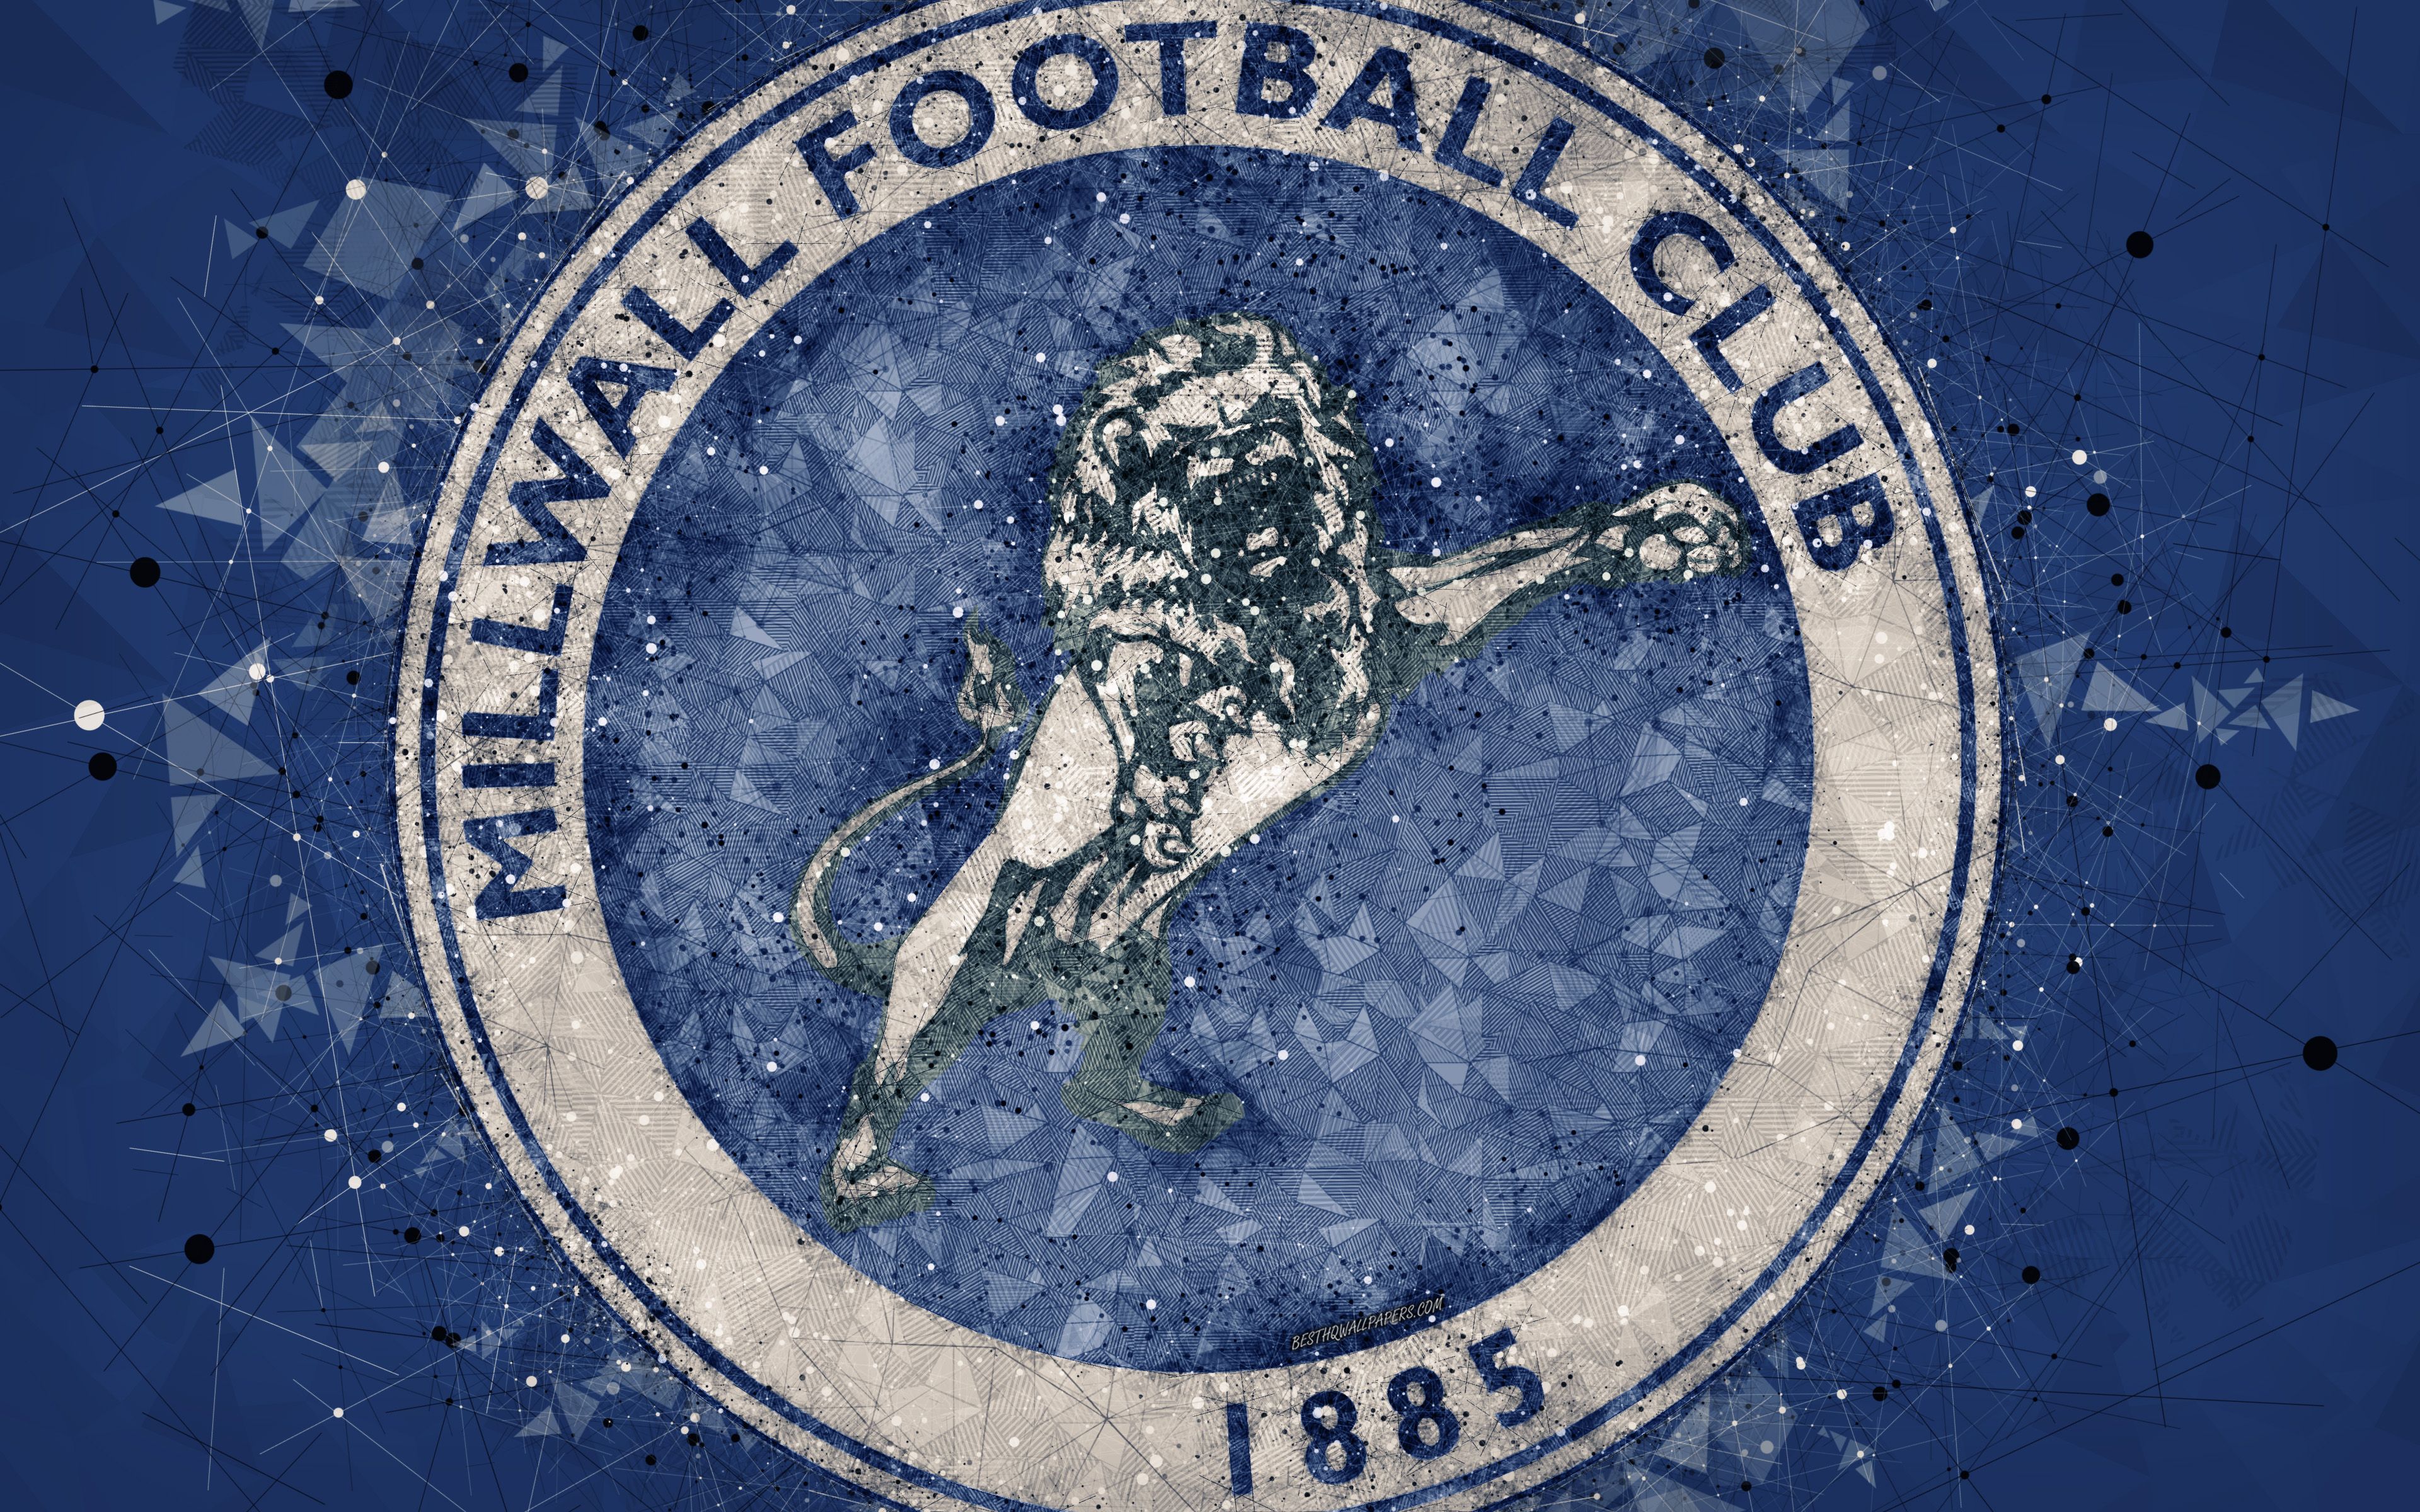 Download wallpaper Millwall FC, 4k, geometric art, logo, blue